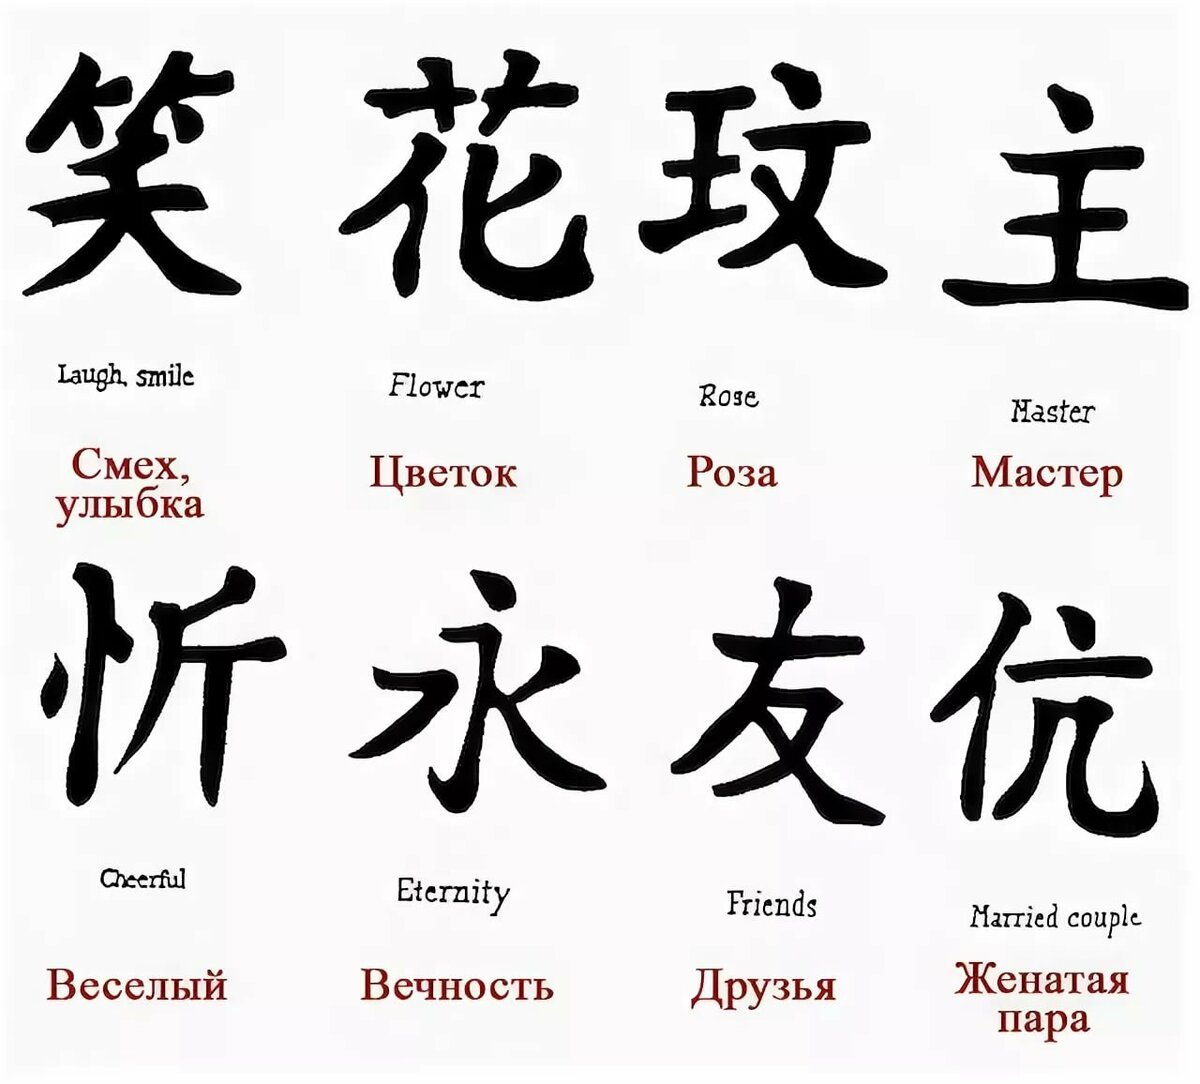 Распространенные русские имена японскими иероглифами